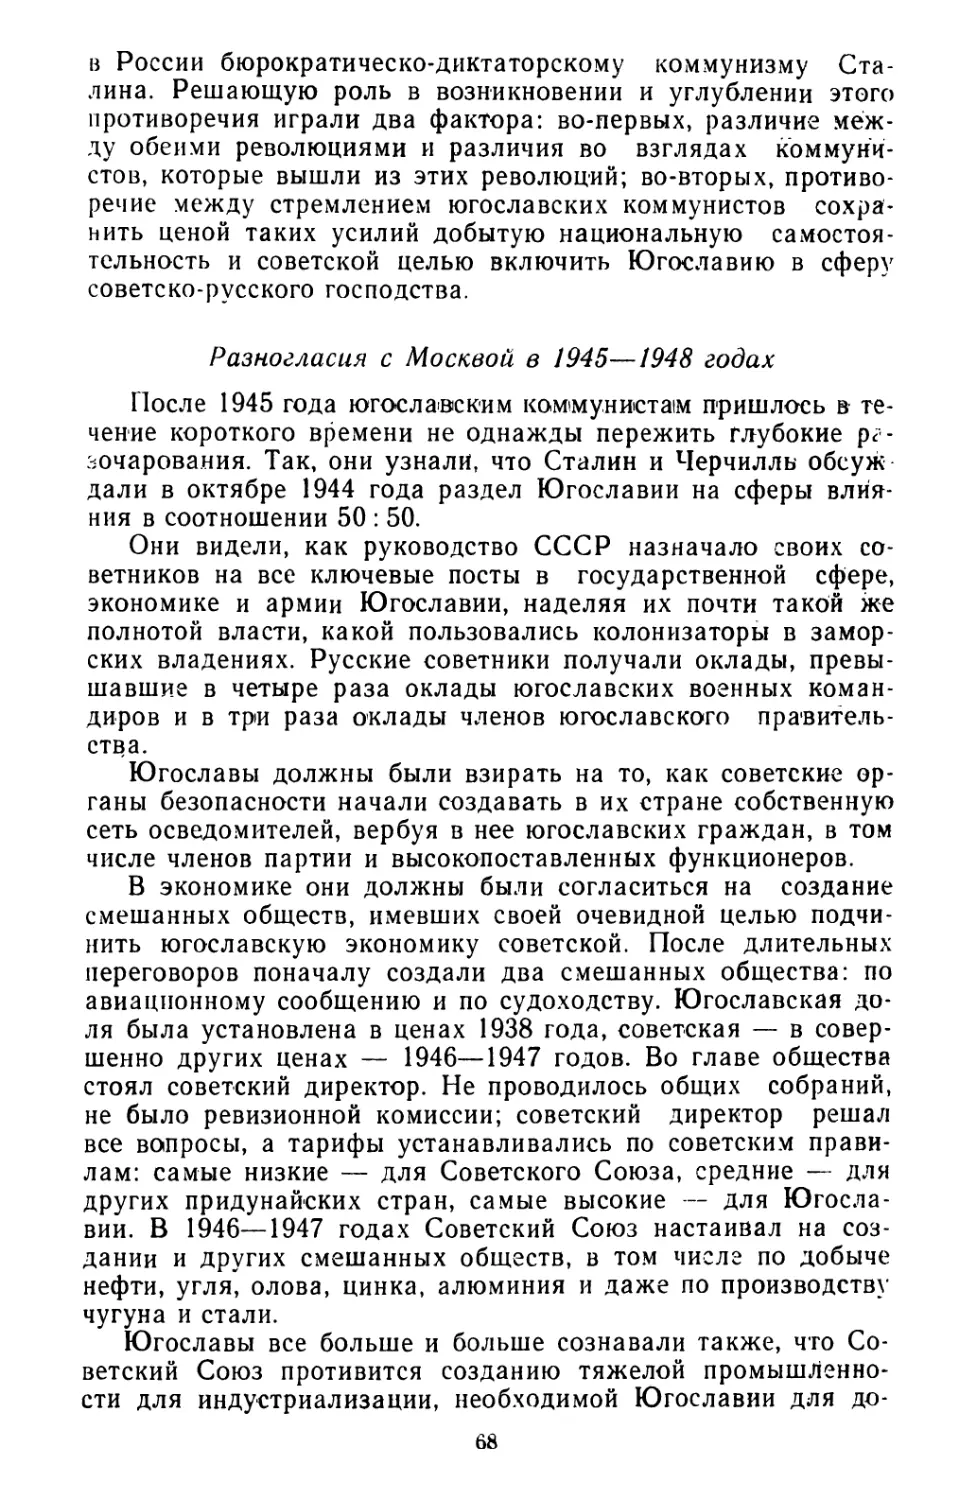 Разногласия с Москвой в 1945—1948 годах